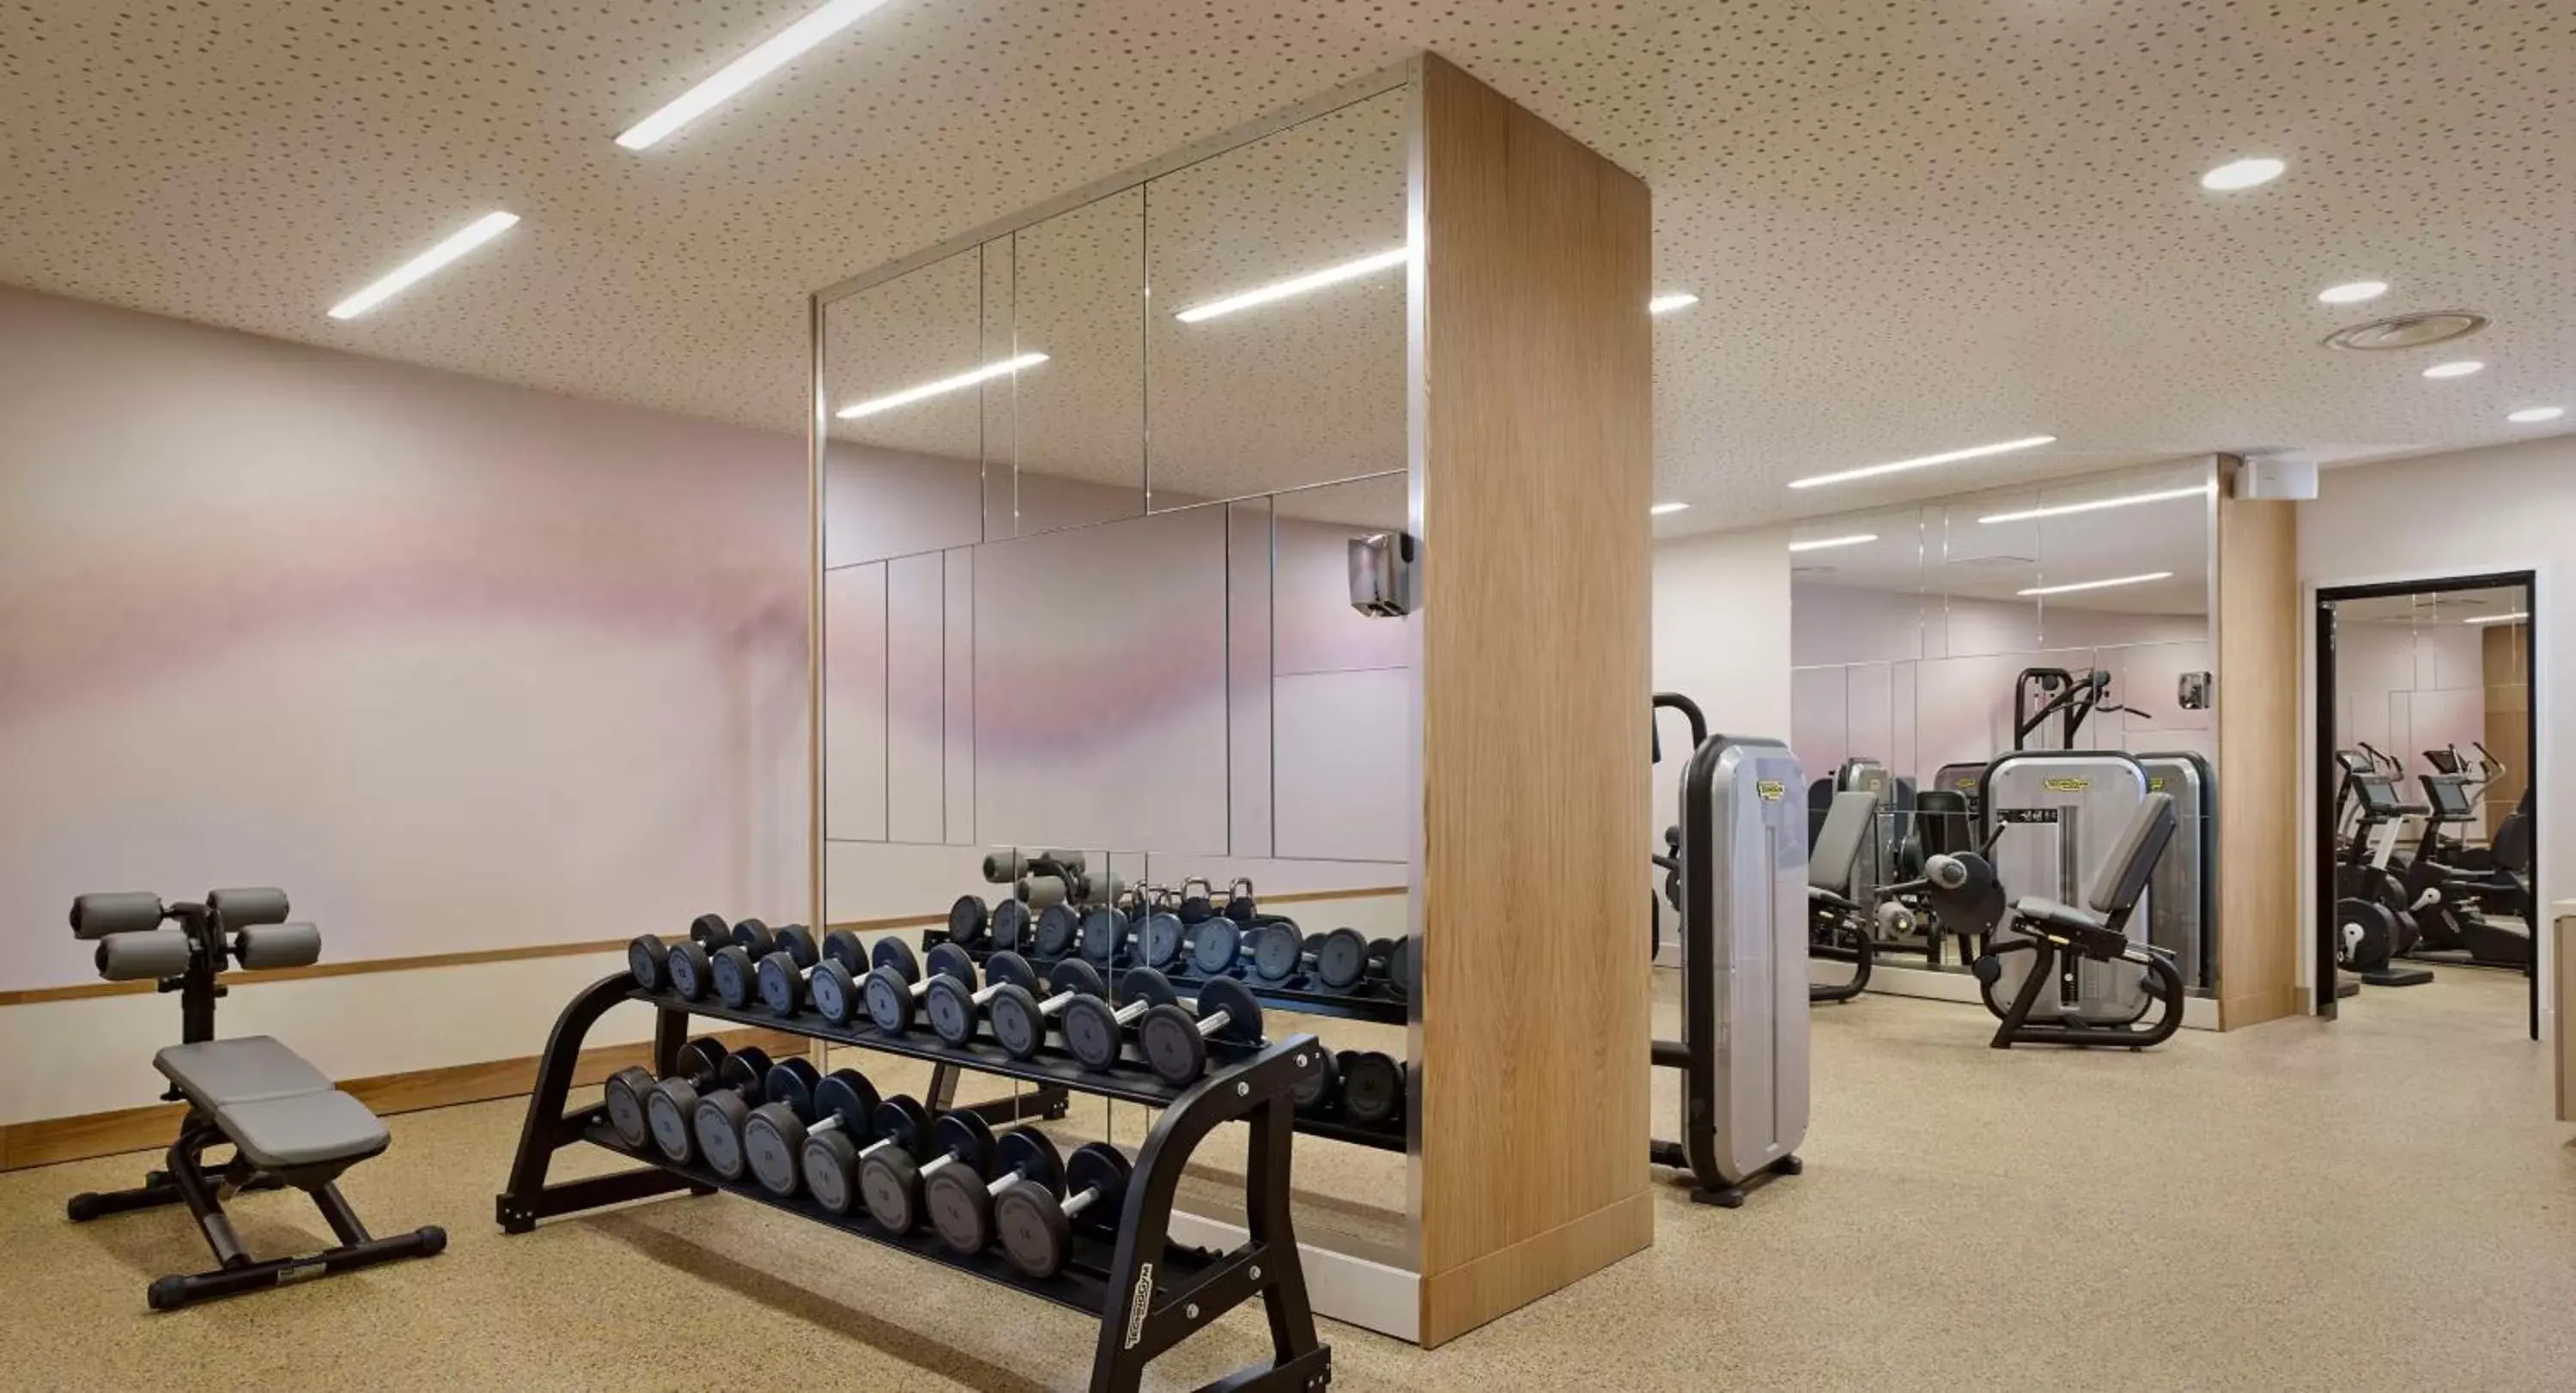 Fitness centre/facilities, Fitness Center/Facilities in Hyatt Regency Paris Etoile